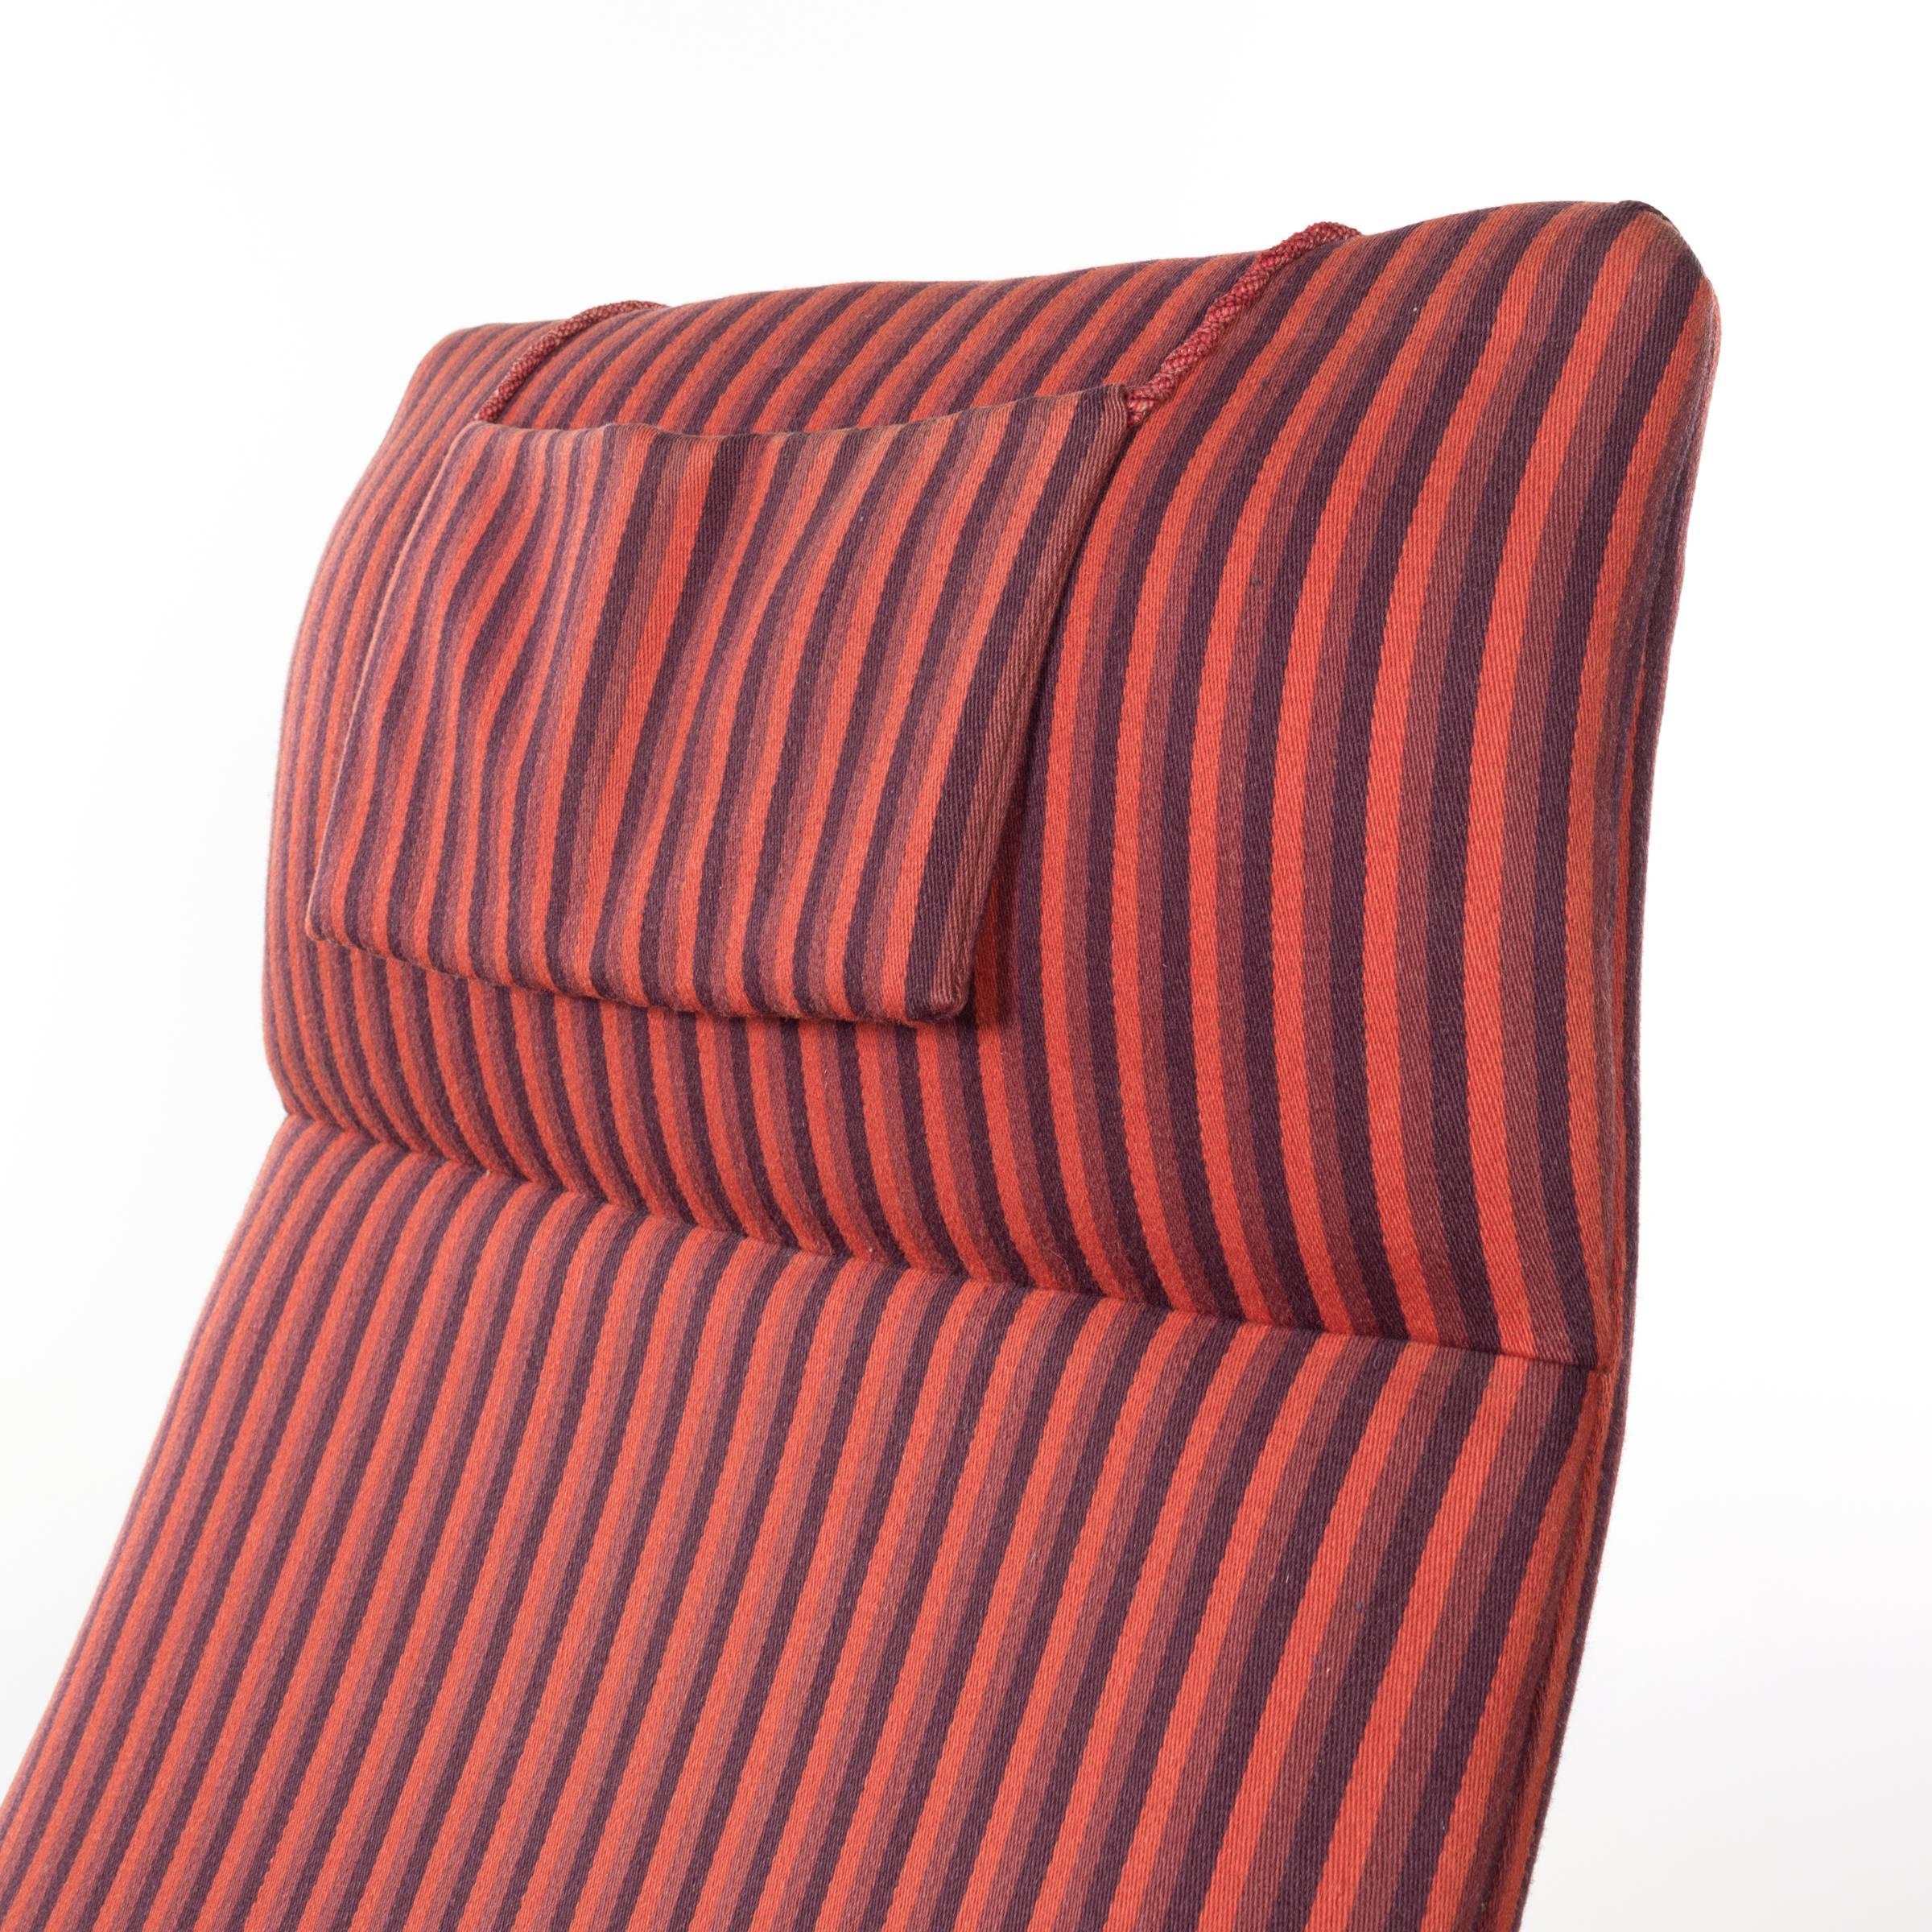 Illum Wikkelso Teak Lounge Chair Model 10H for Soren Willadsen, Denmark 2